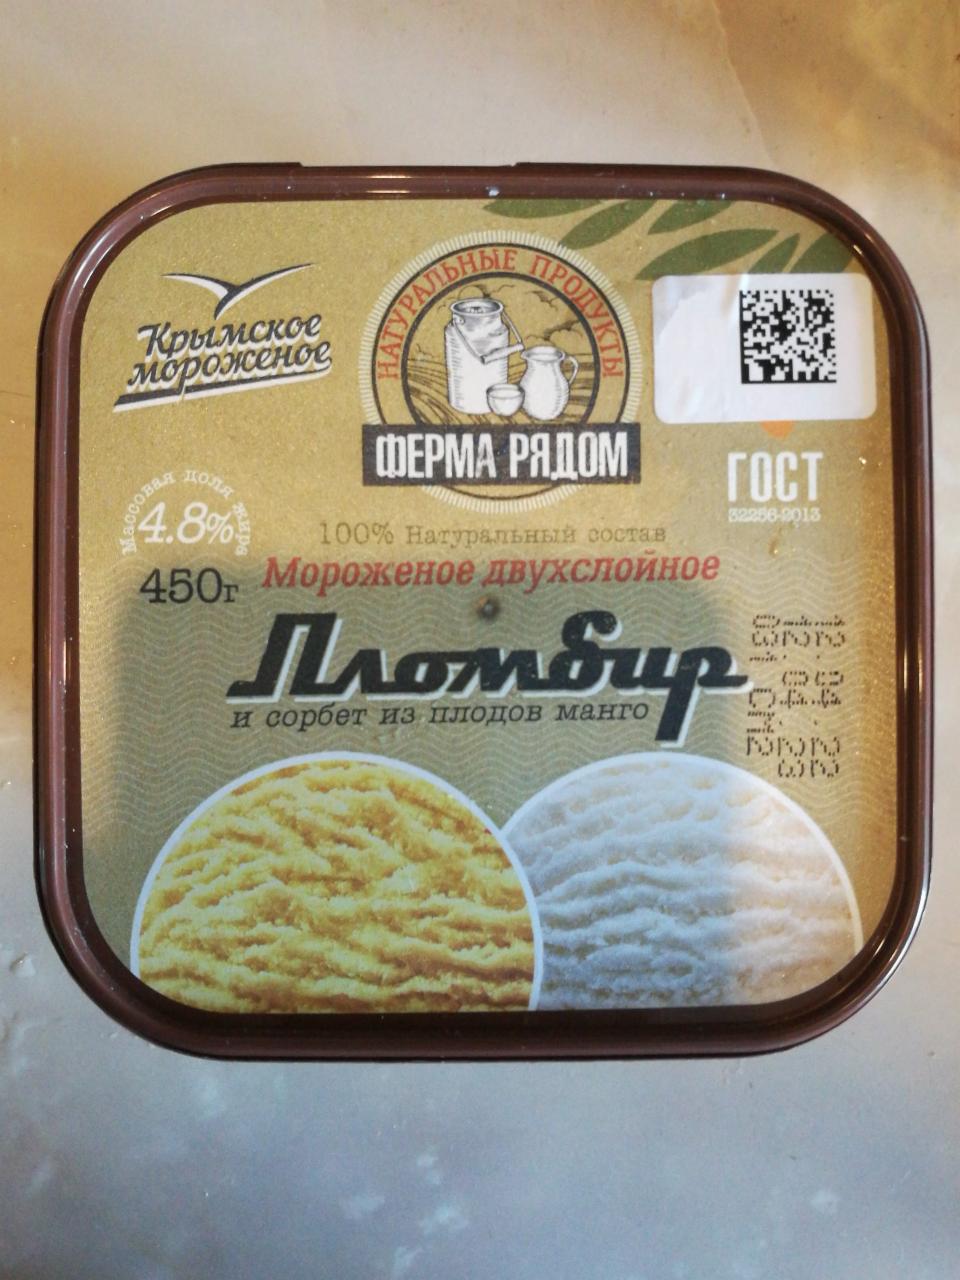 Фото - Мороженое двухслойное Пломбир и сорбет из плодов манго Крымское мороженое